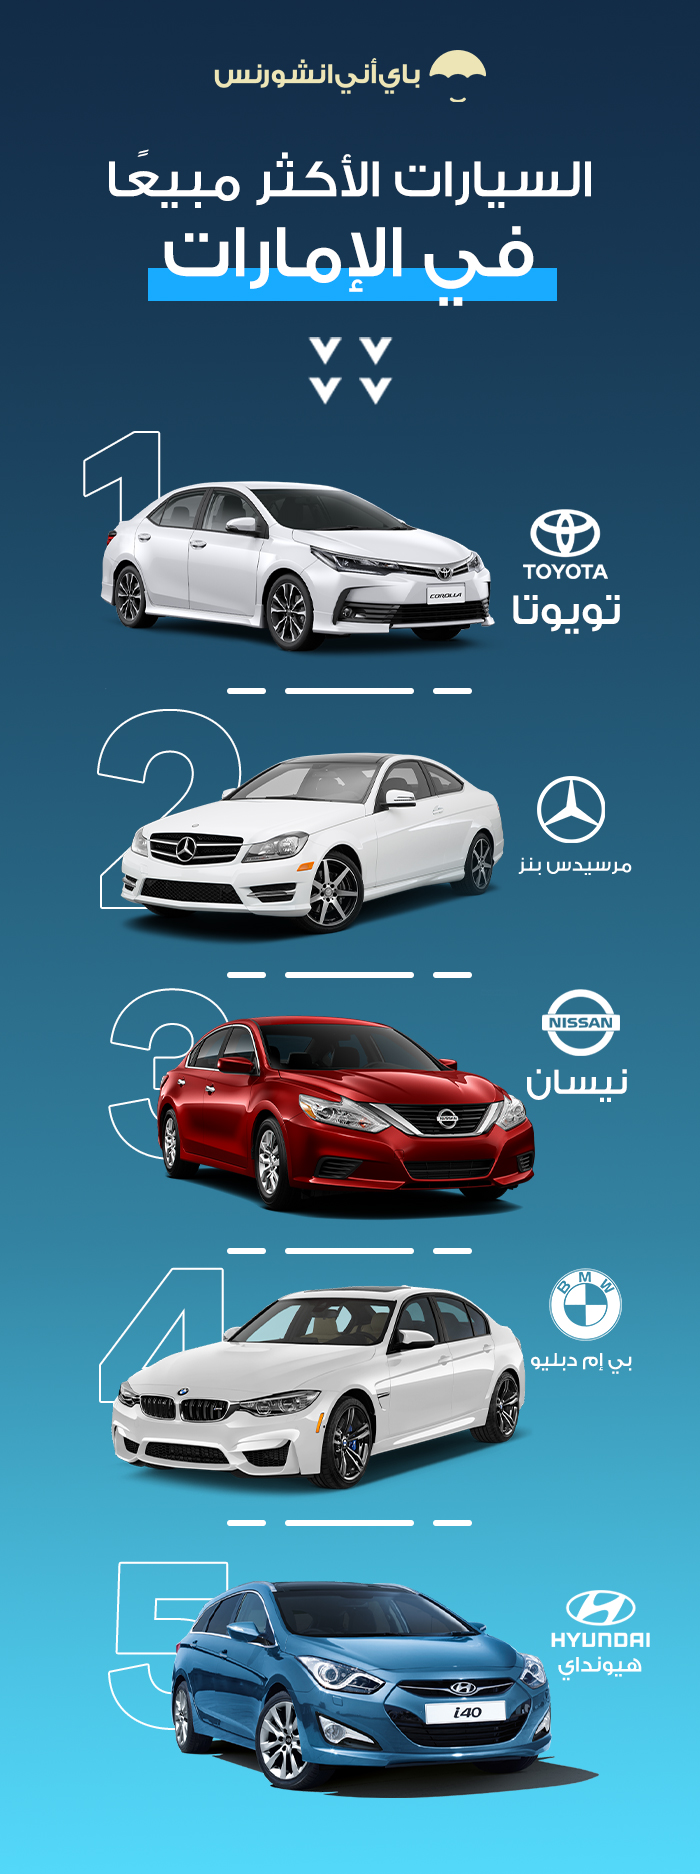 السيارات الأكثر مبيعًا في الإمارات - بيع السيارة